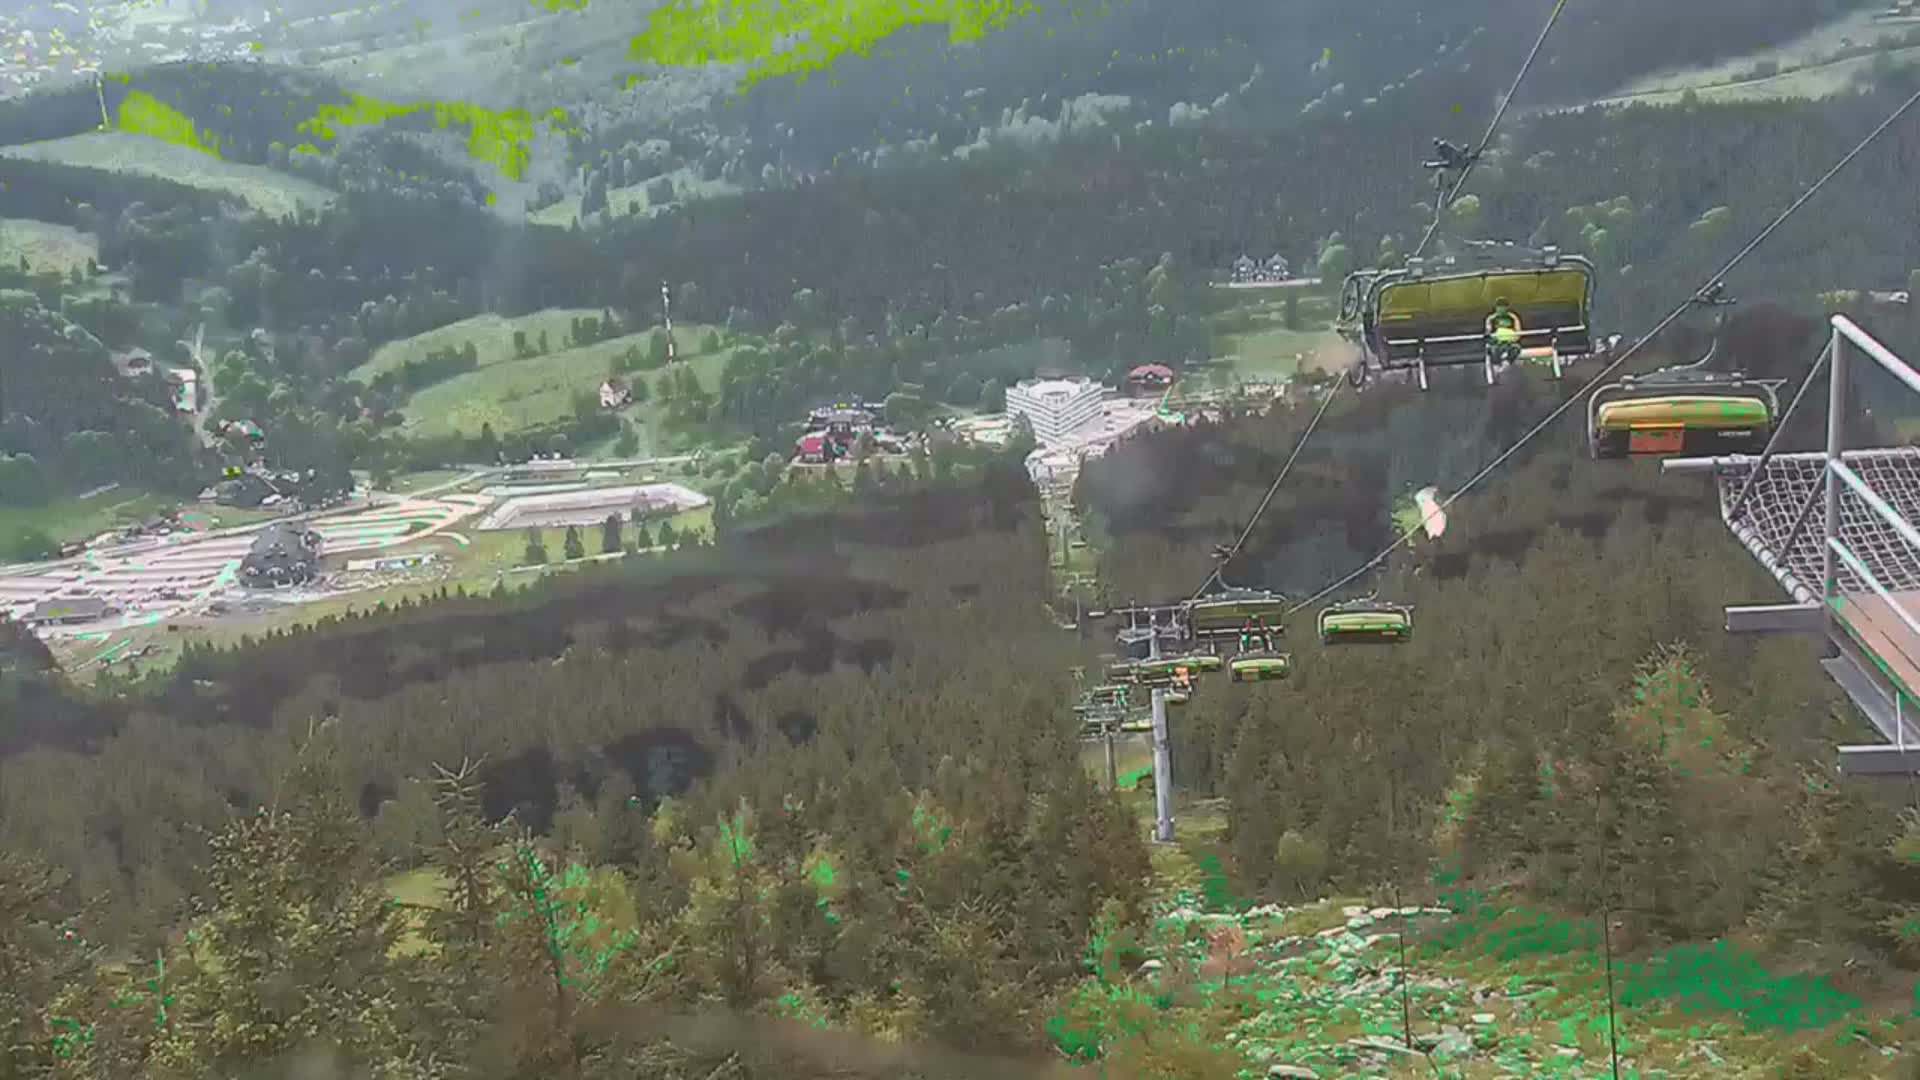 Czarna Gora webcam - ski slope A